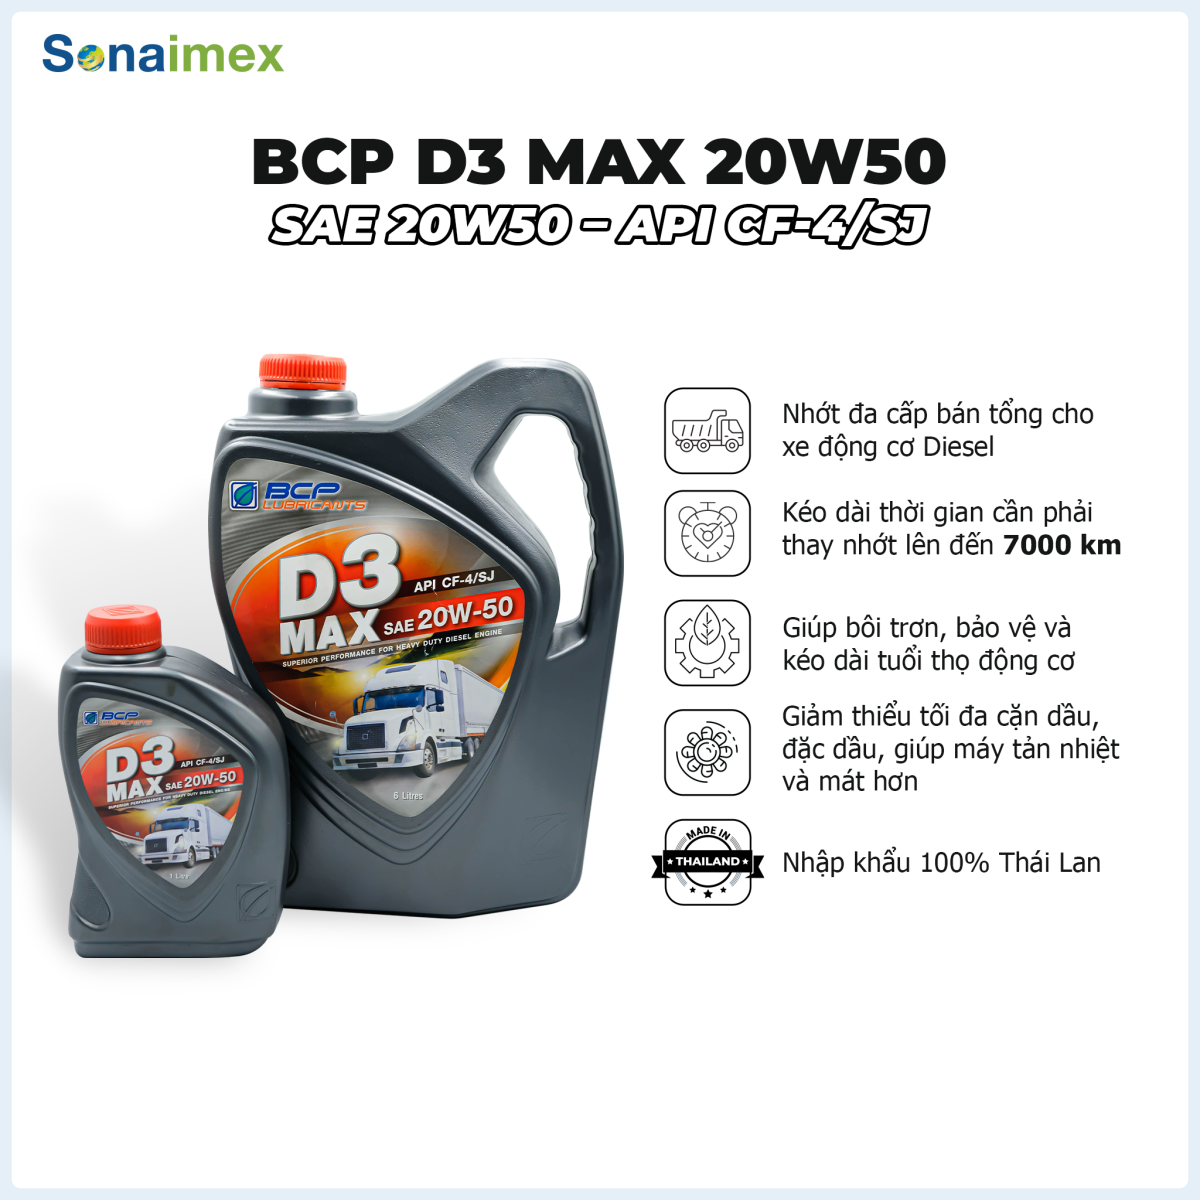 D3 MAX CF4/SJ 20W50